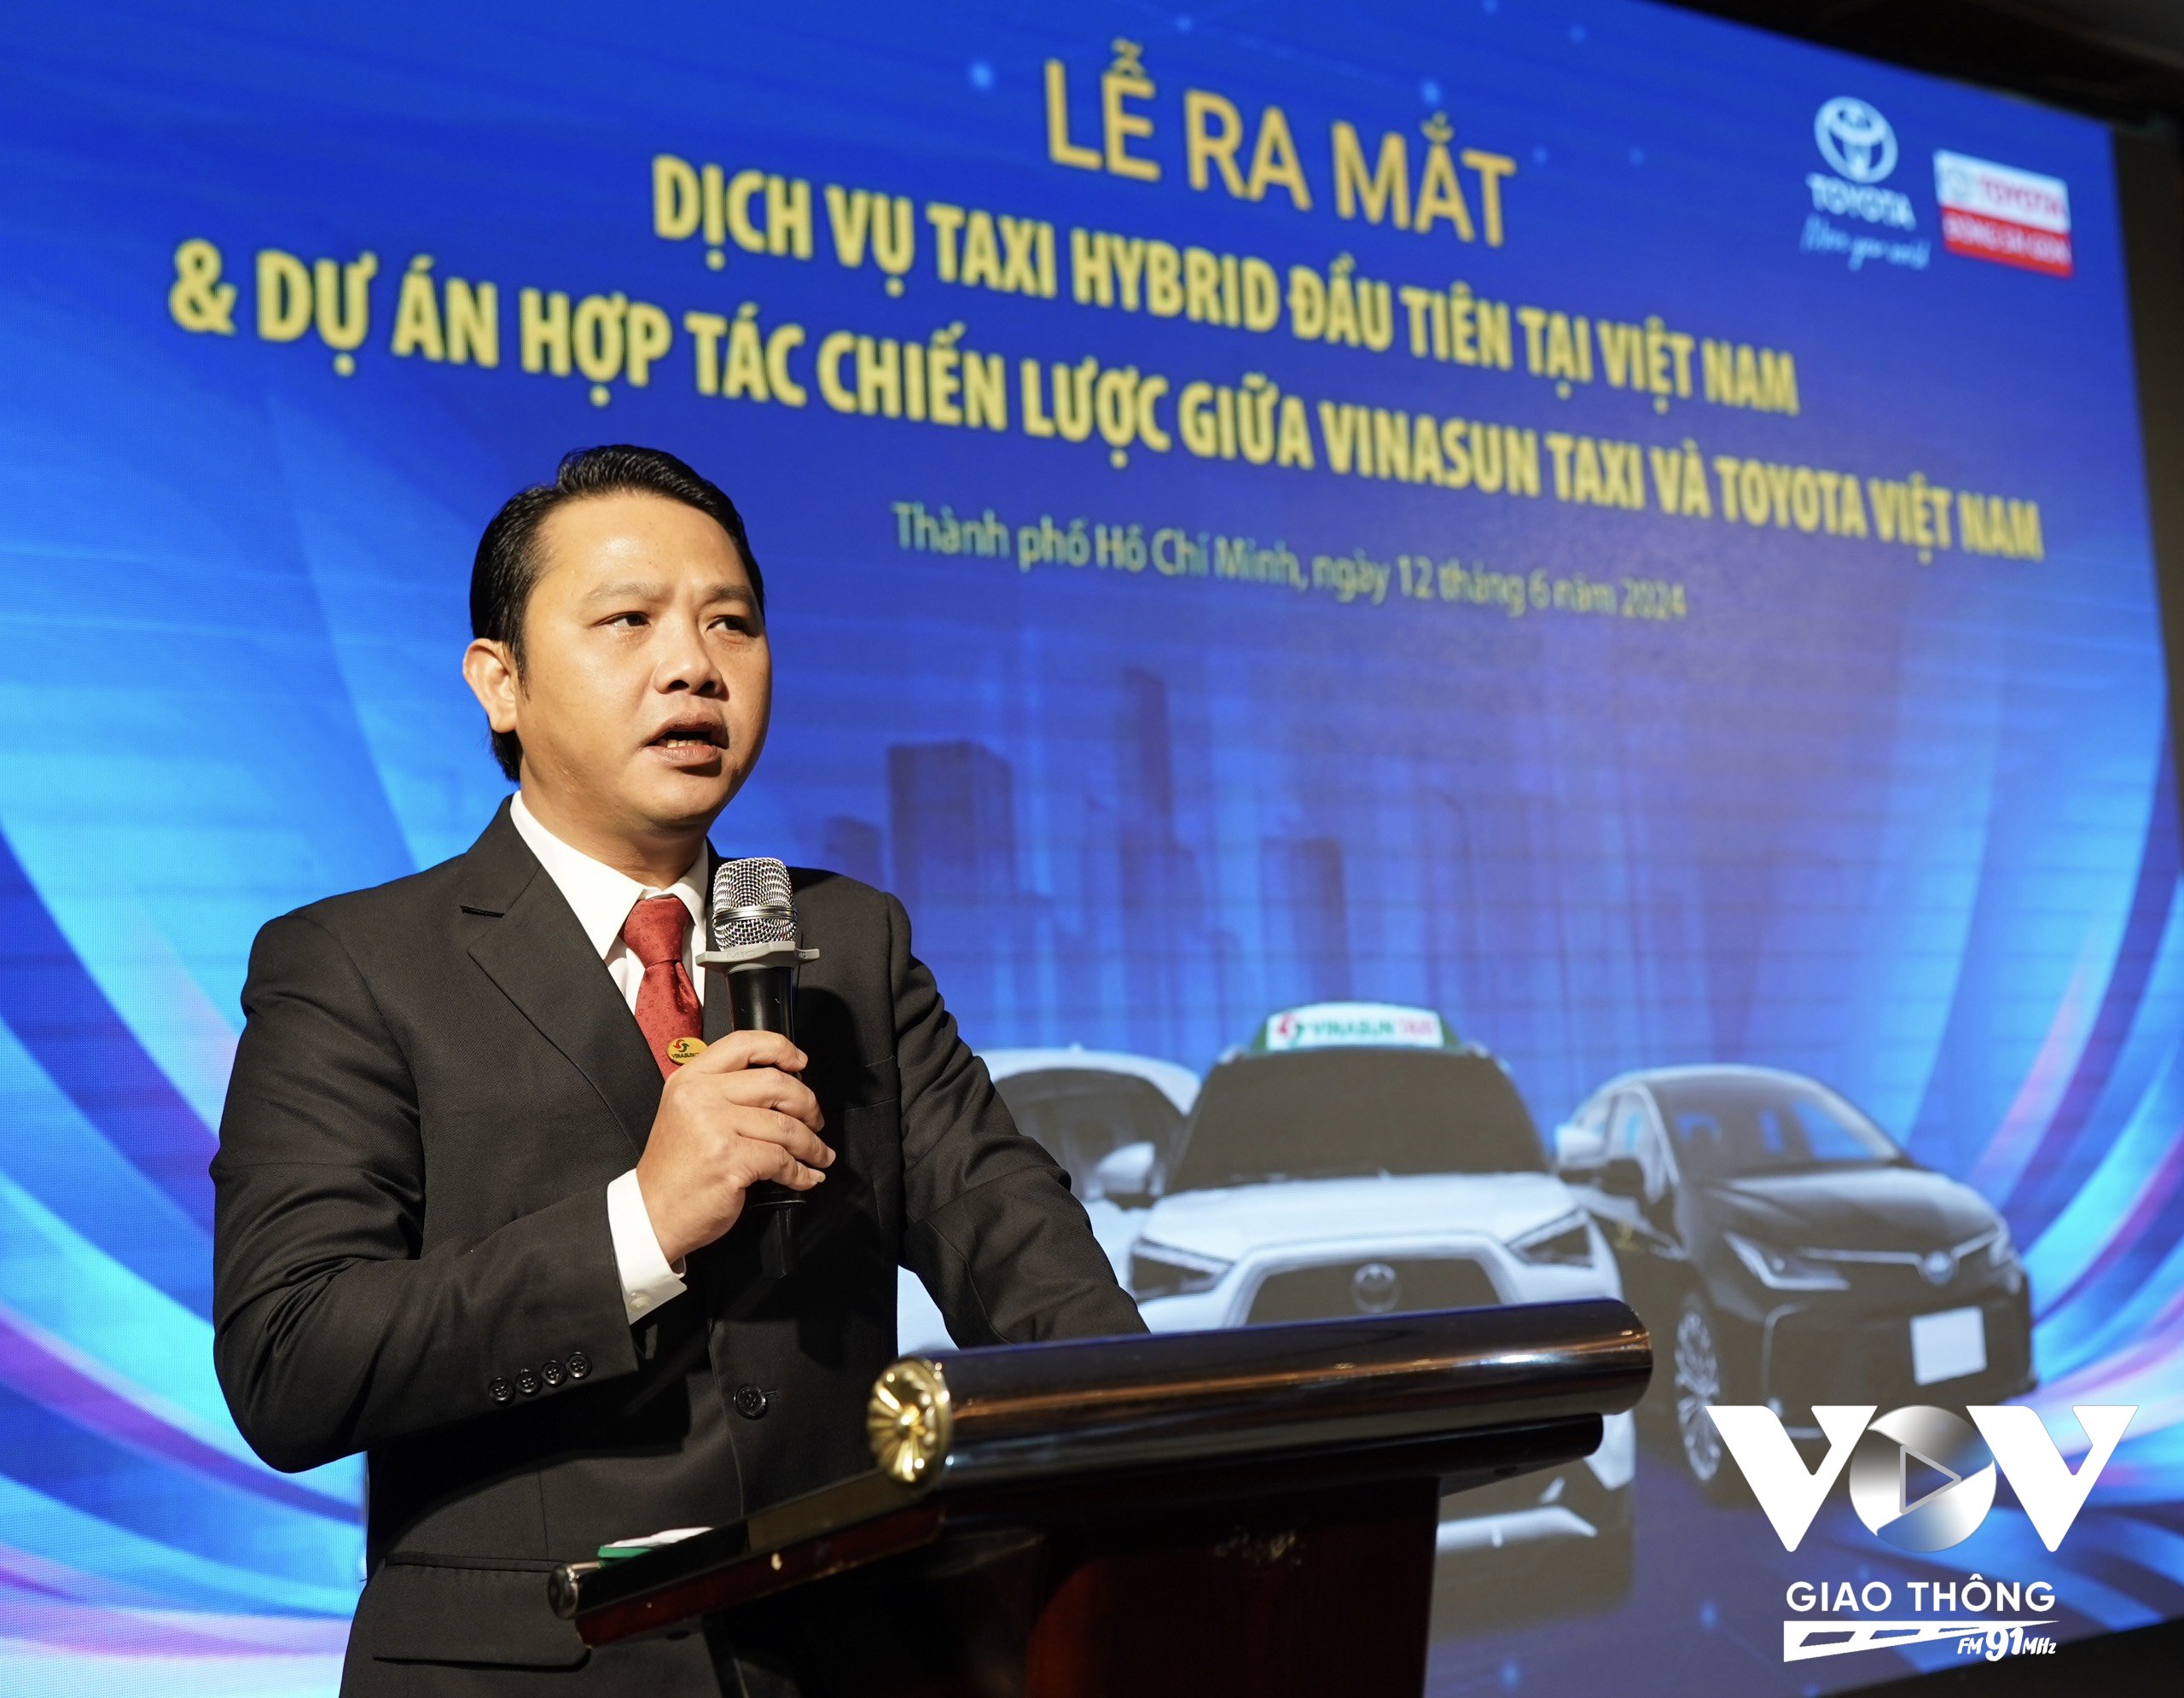 Ông Đặng Thành Duy - Tổng giám đốc Vinasun Taxi cho rằng việc lựa chọn xe hybrid trong giai đoạn này là phù hợp với thực tế với cơ sở hạ tầng